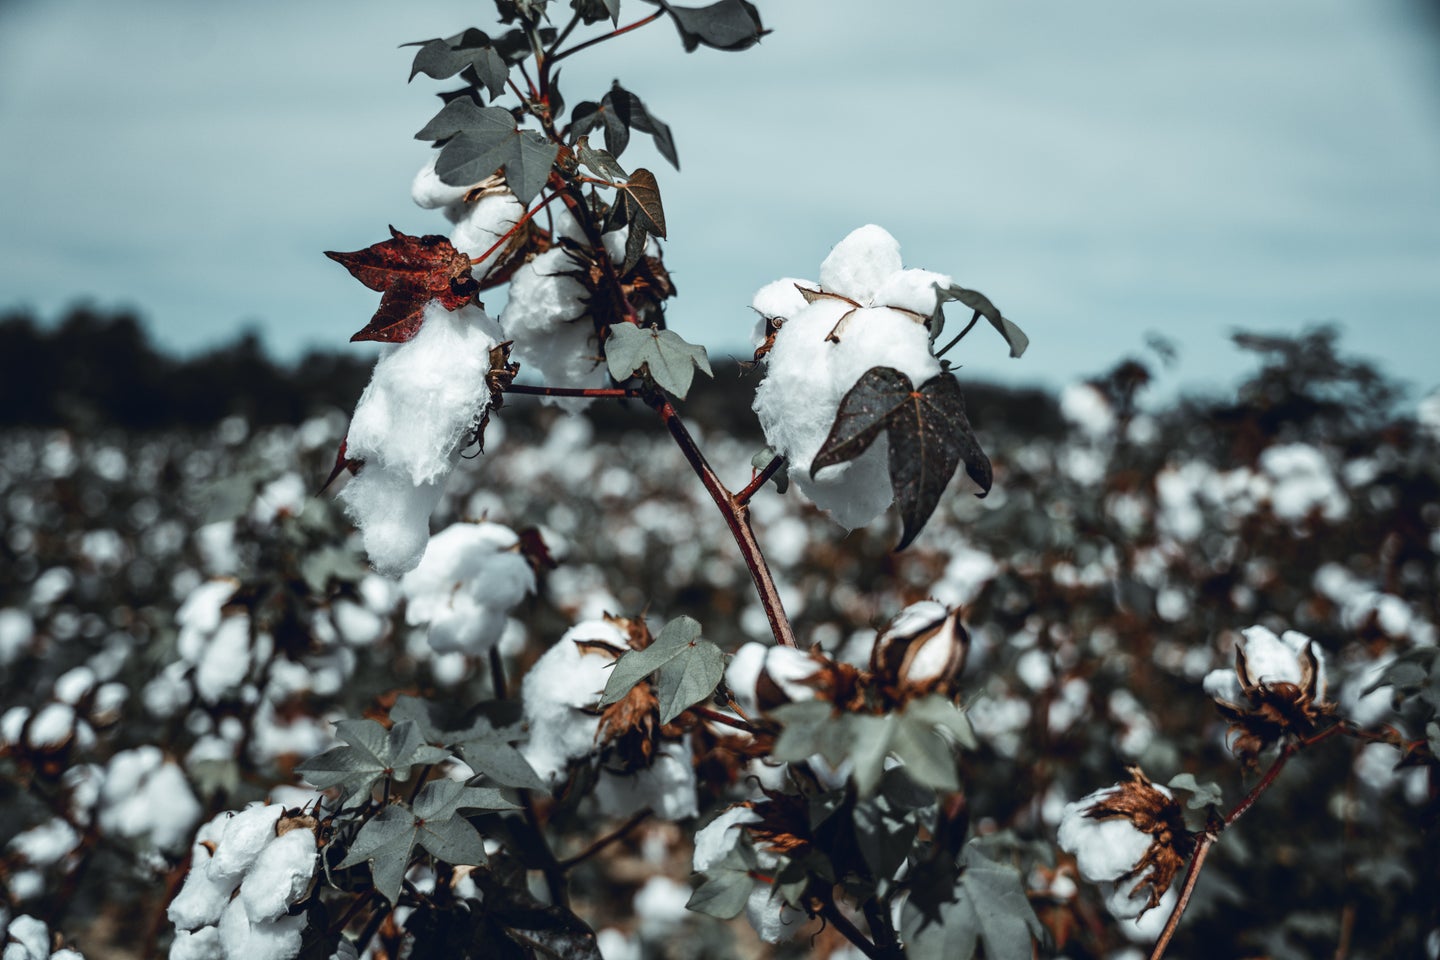 Cotton plants on a regenerative farming plot against the blue sky